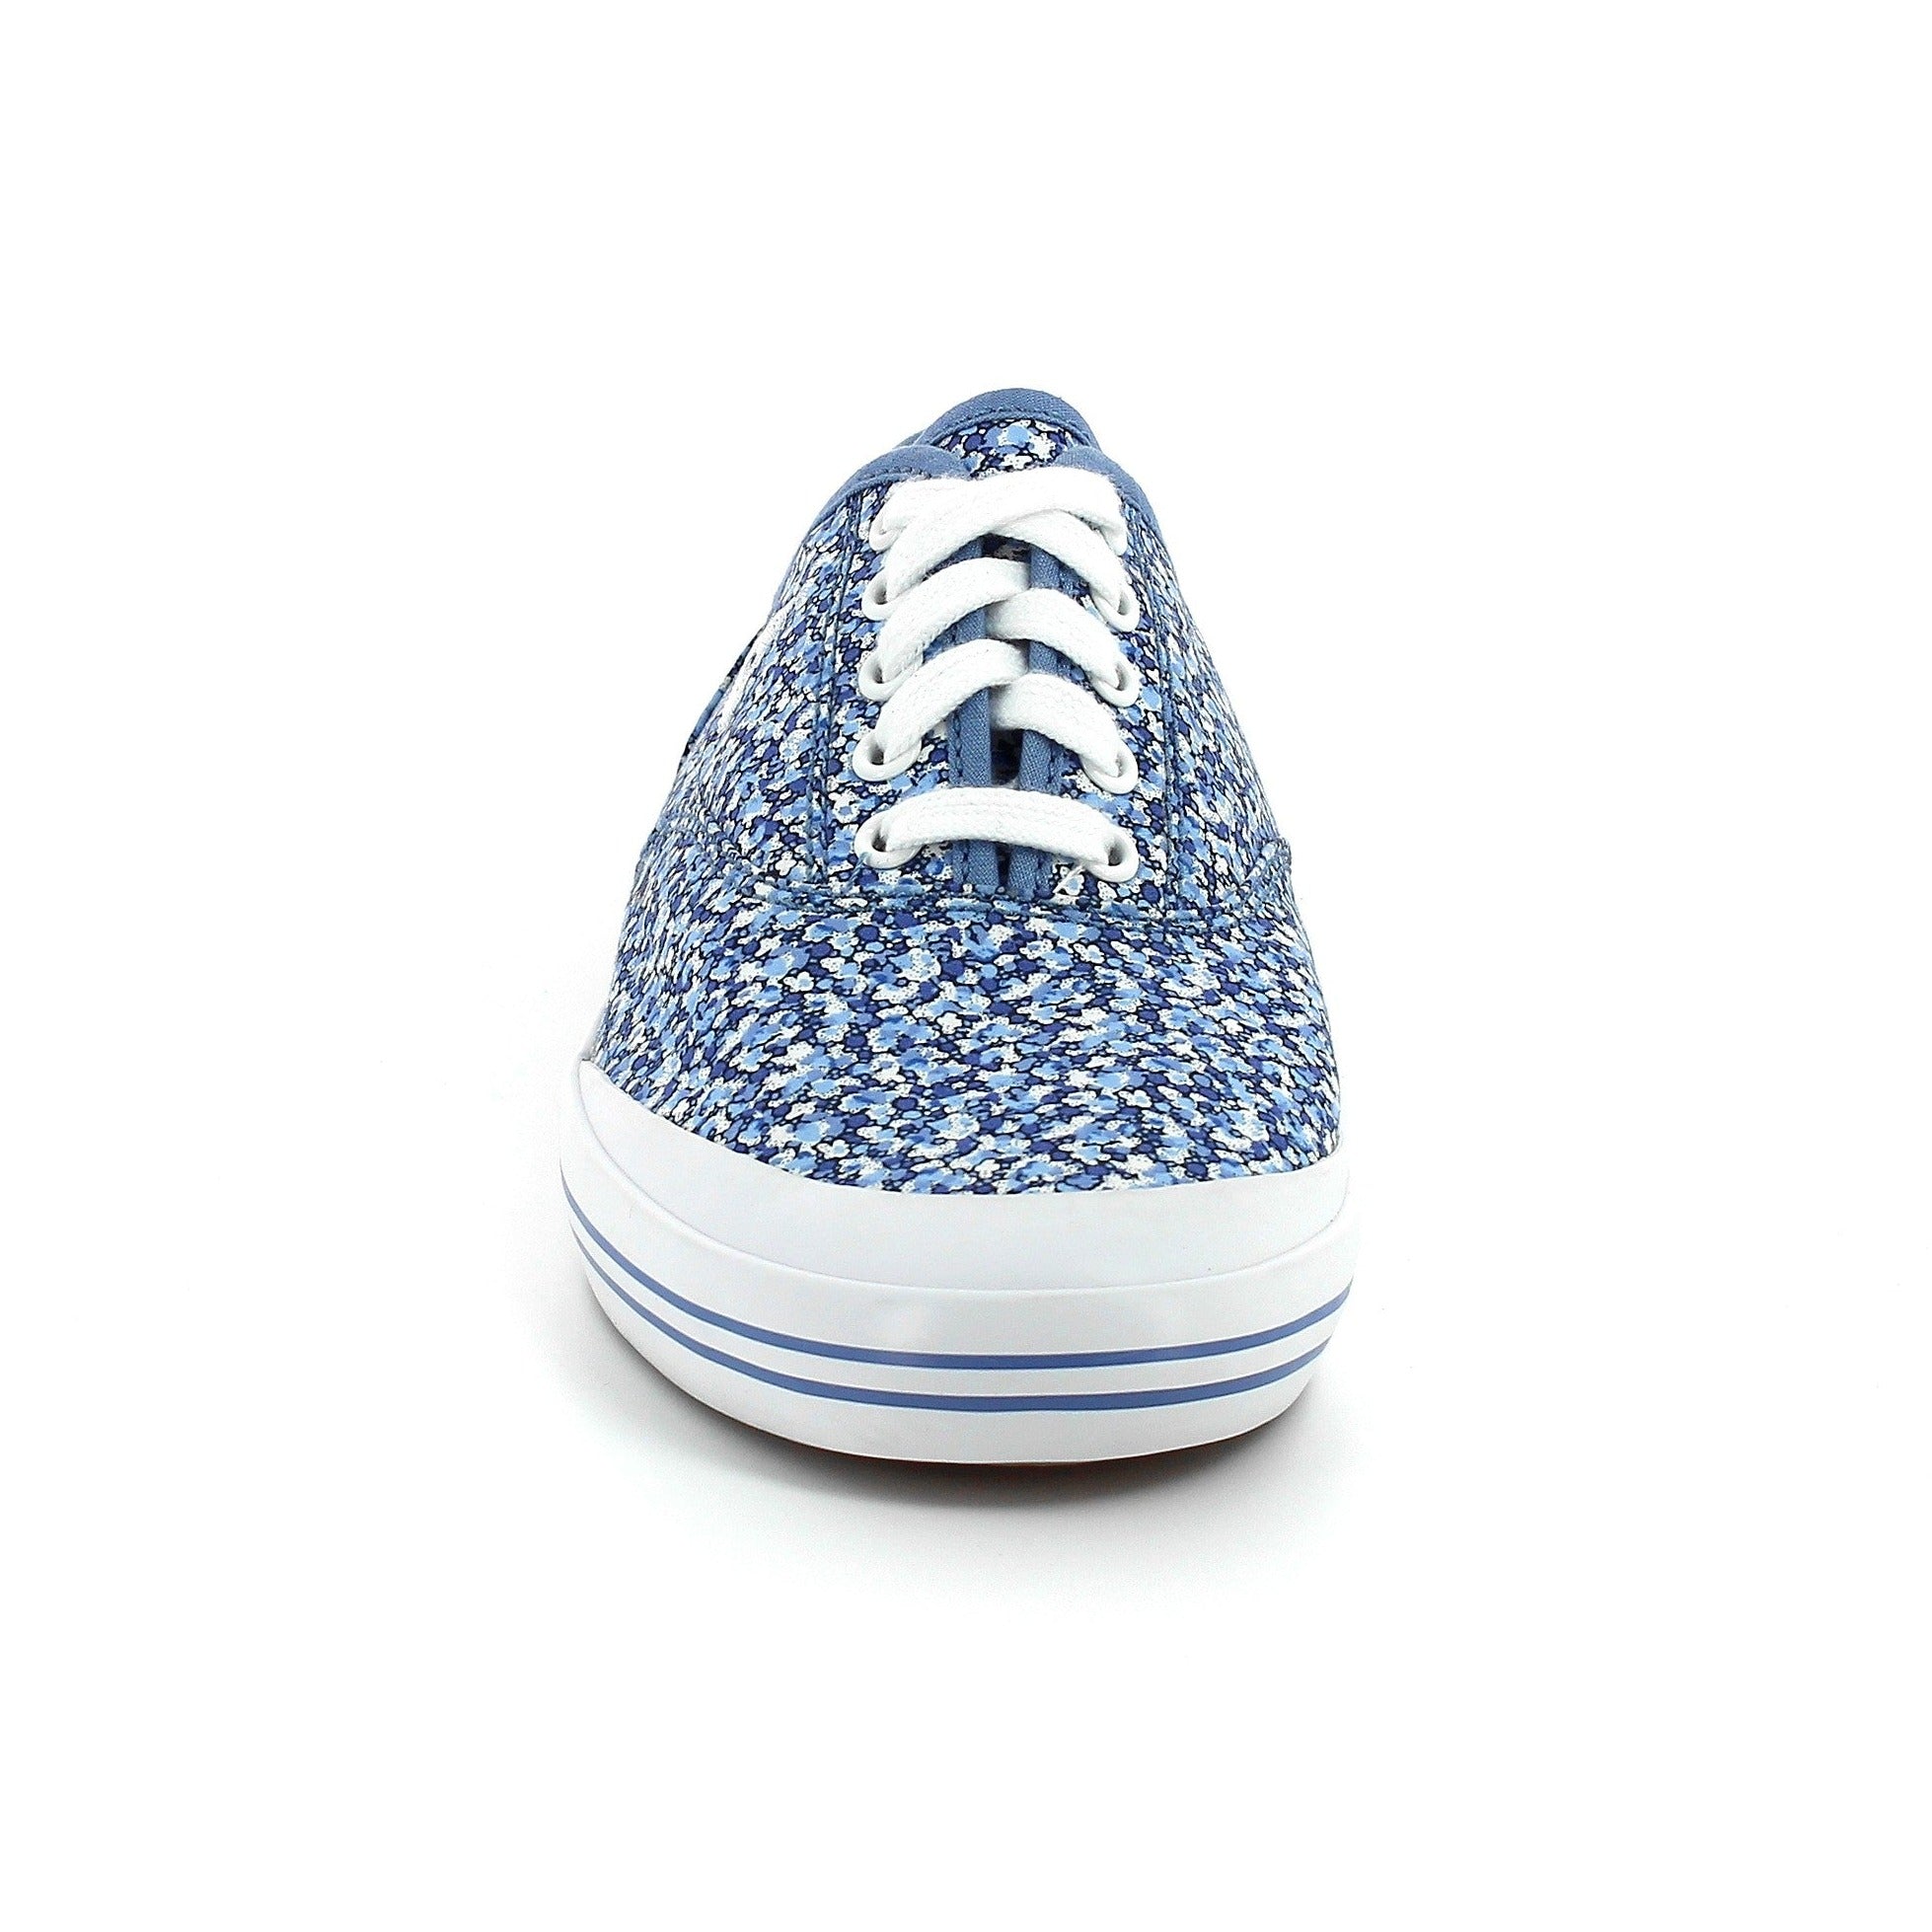 Le Coq Sportif women&#39;s sneakers shoe Grandville1510118 blue flowers